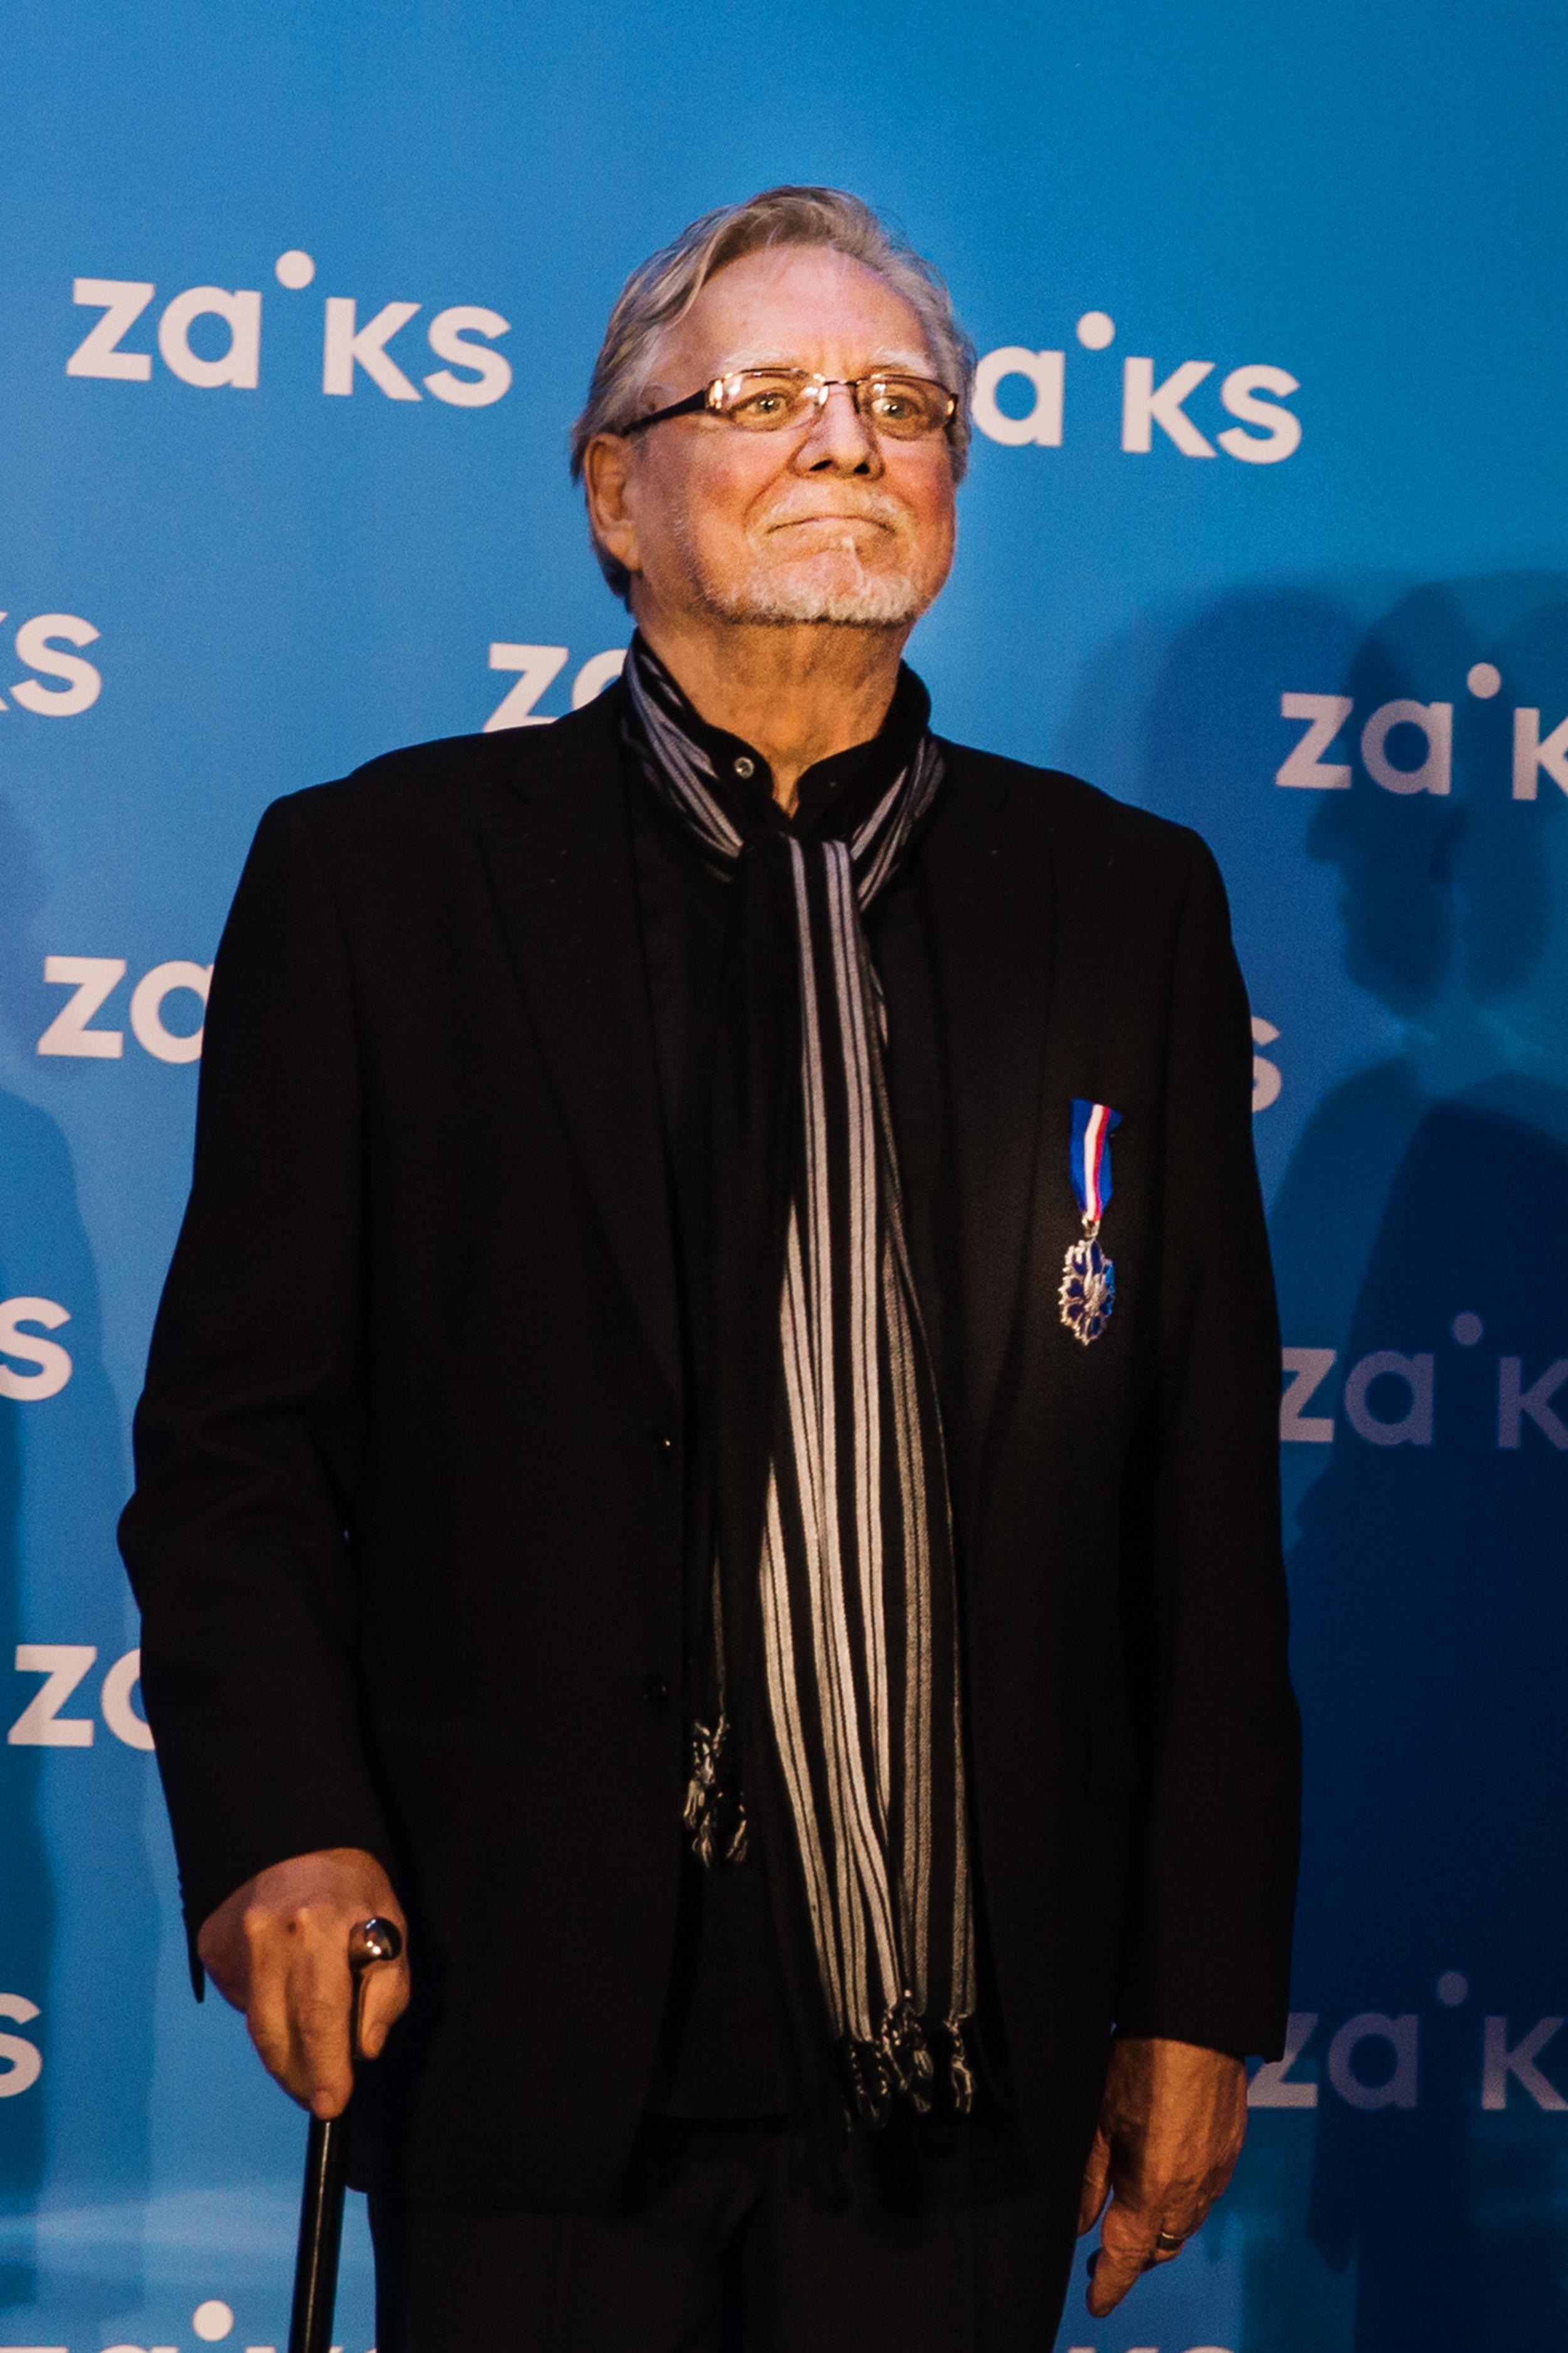 Przemysław Śliwa Fot. Karpati&Zarewicz (1)